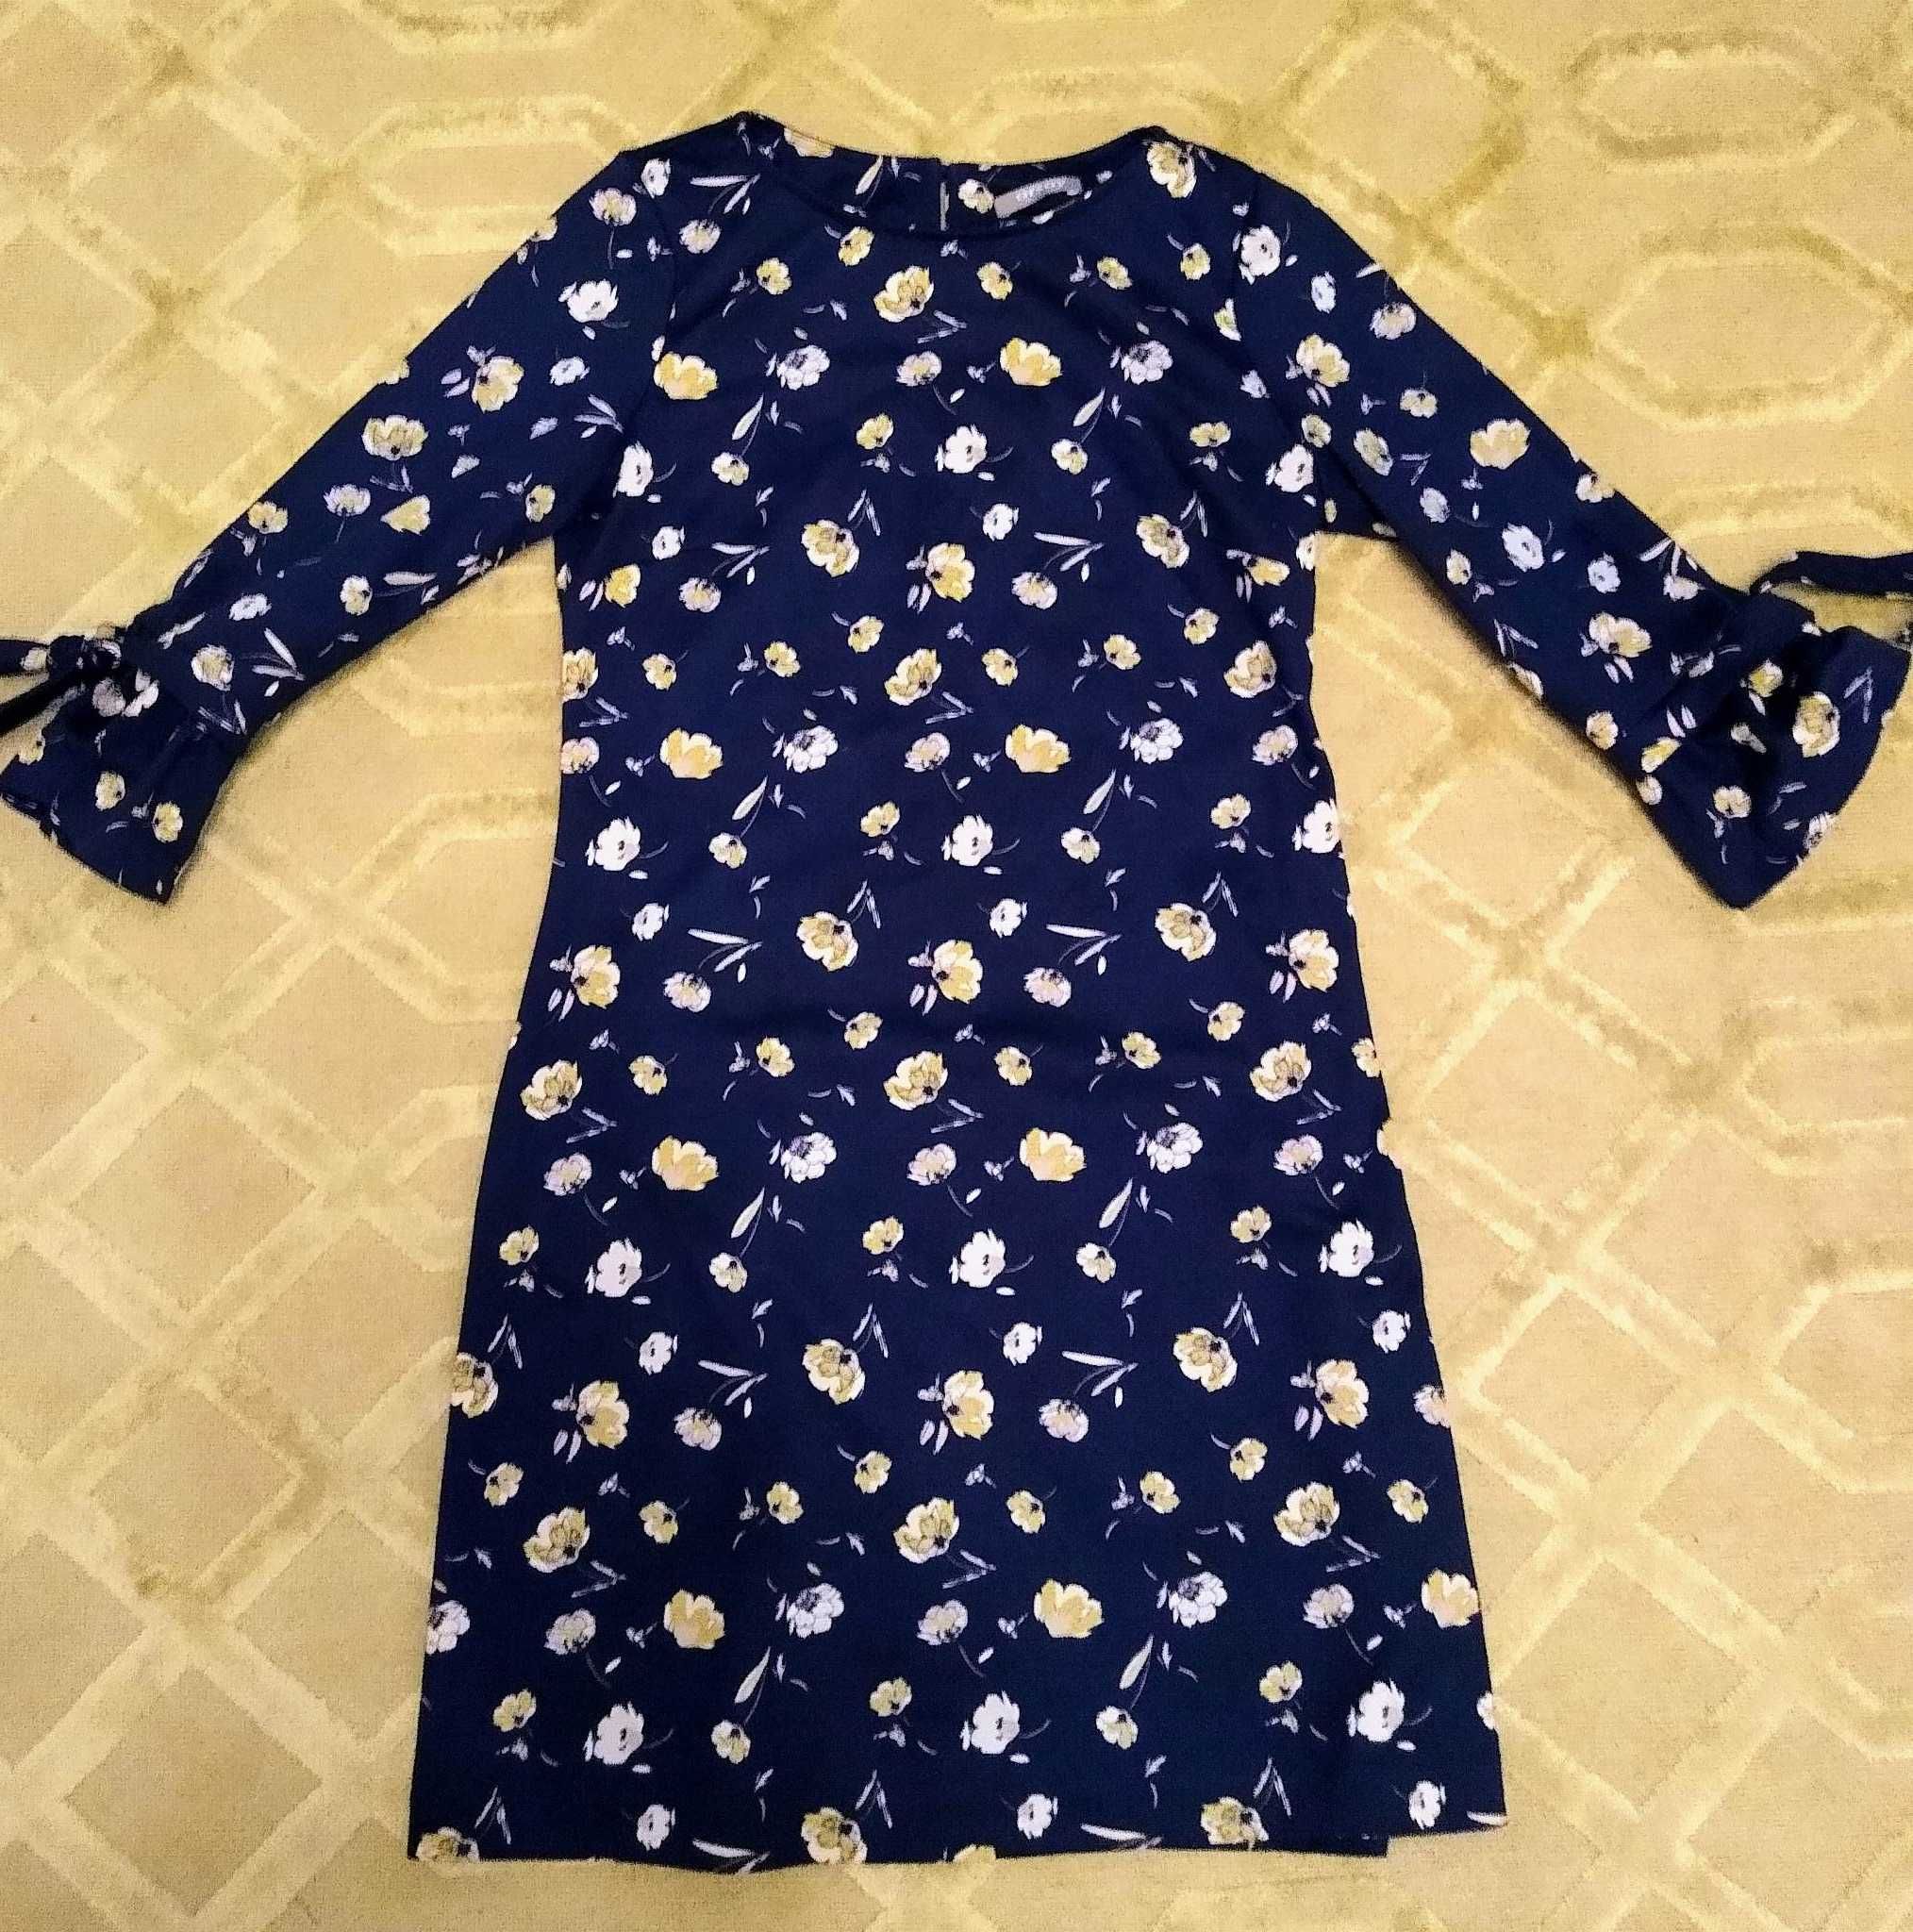 Orsay praktyczna wiosenna sukienka XS/34